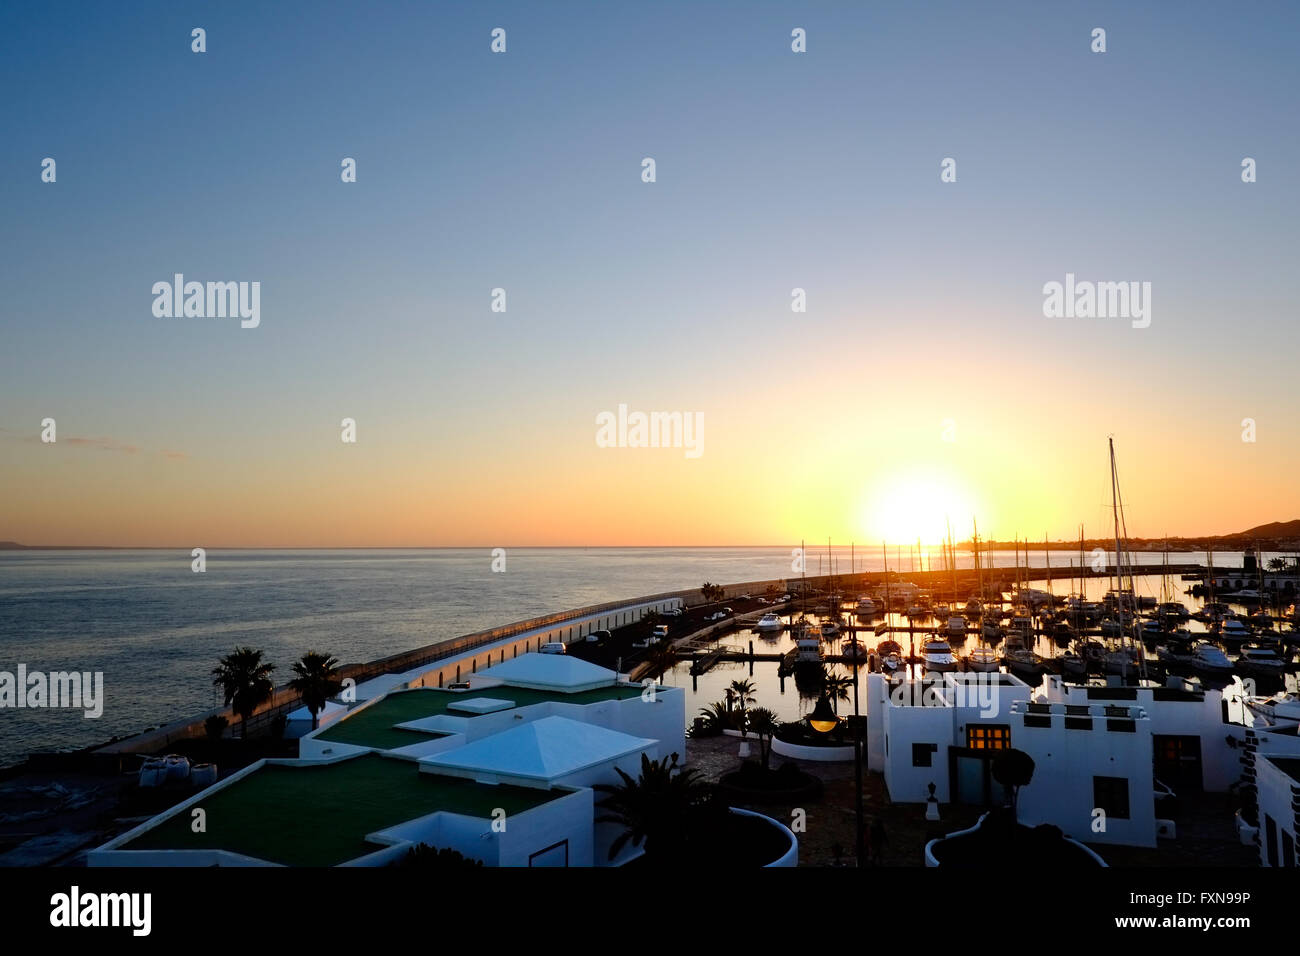 Una vista del porto Rubicone harbour con un bel tramonto in background Foto Stock